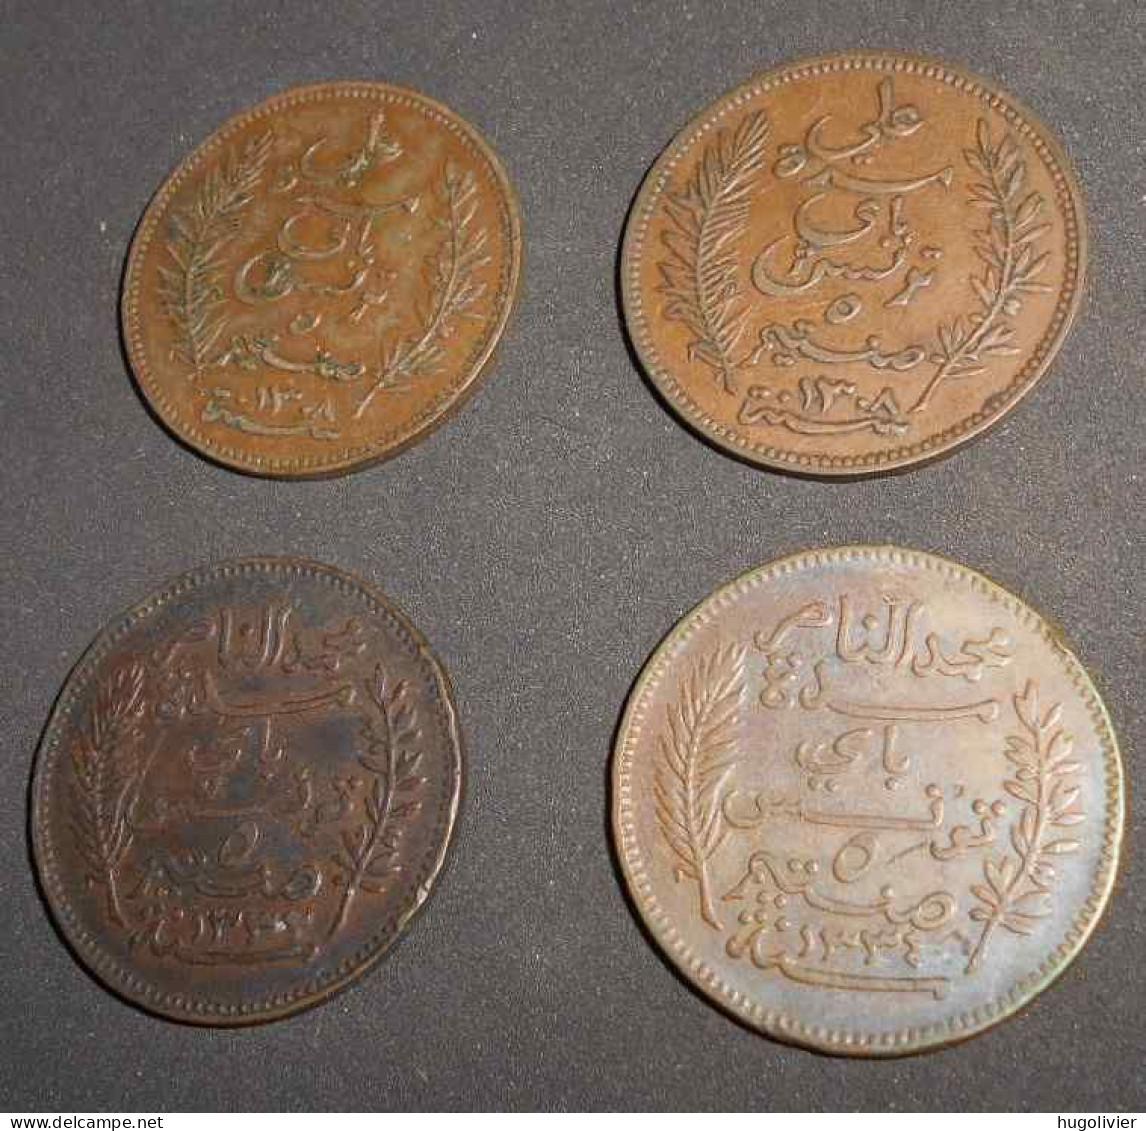 Lot De 4 X 5 Centimes Tunisie Protectorat Français 1914 Et 1916 (Al Nasir) 1891 (2 X Ali Bey) - Tunisie